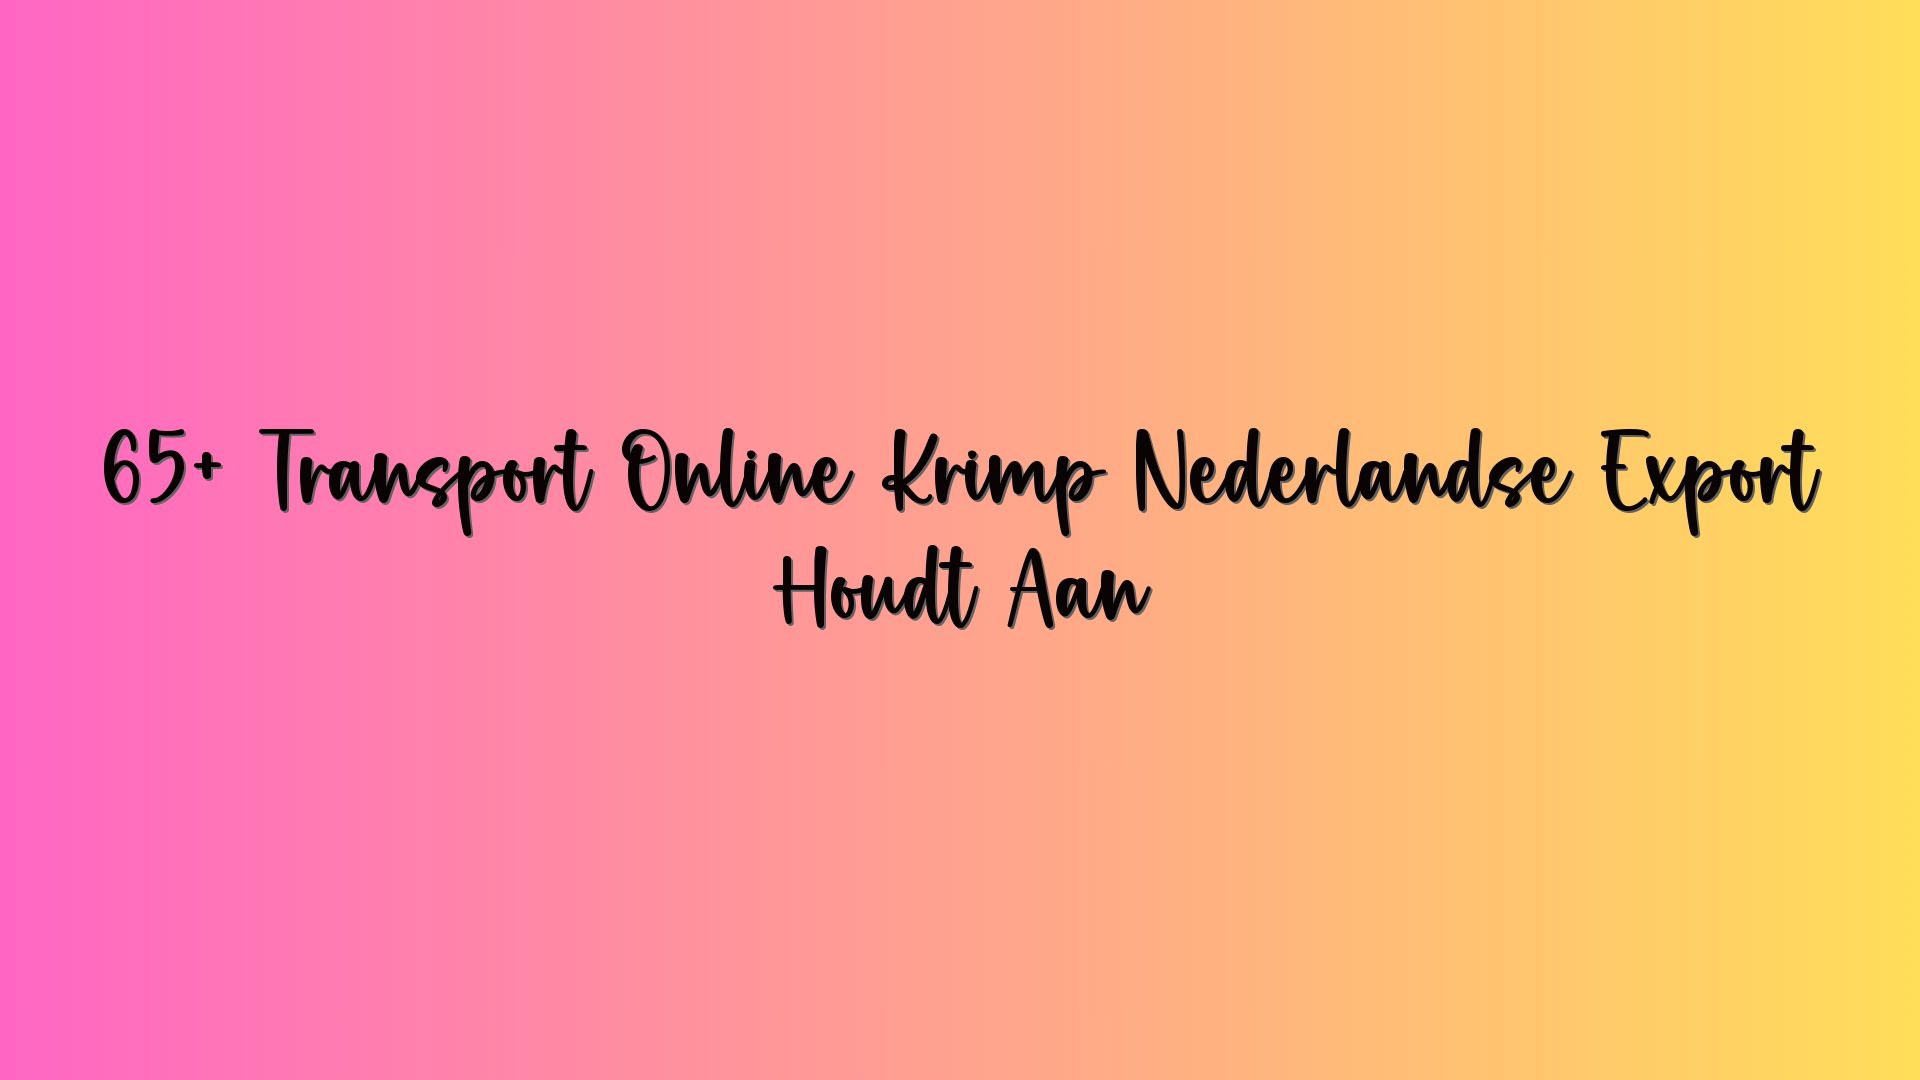 65+ Transport Online Krimp Nederlandse Export Houdt Aan